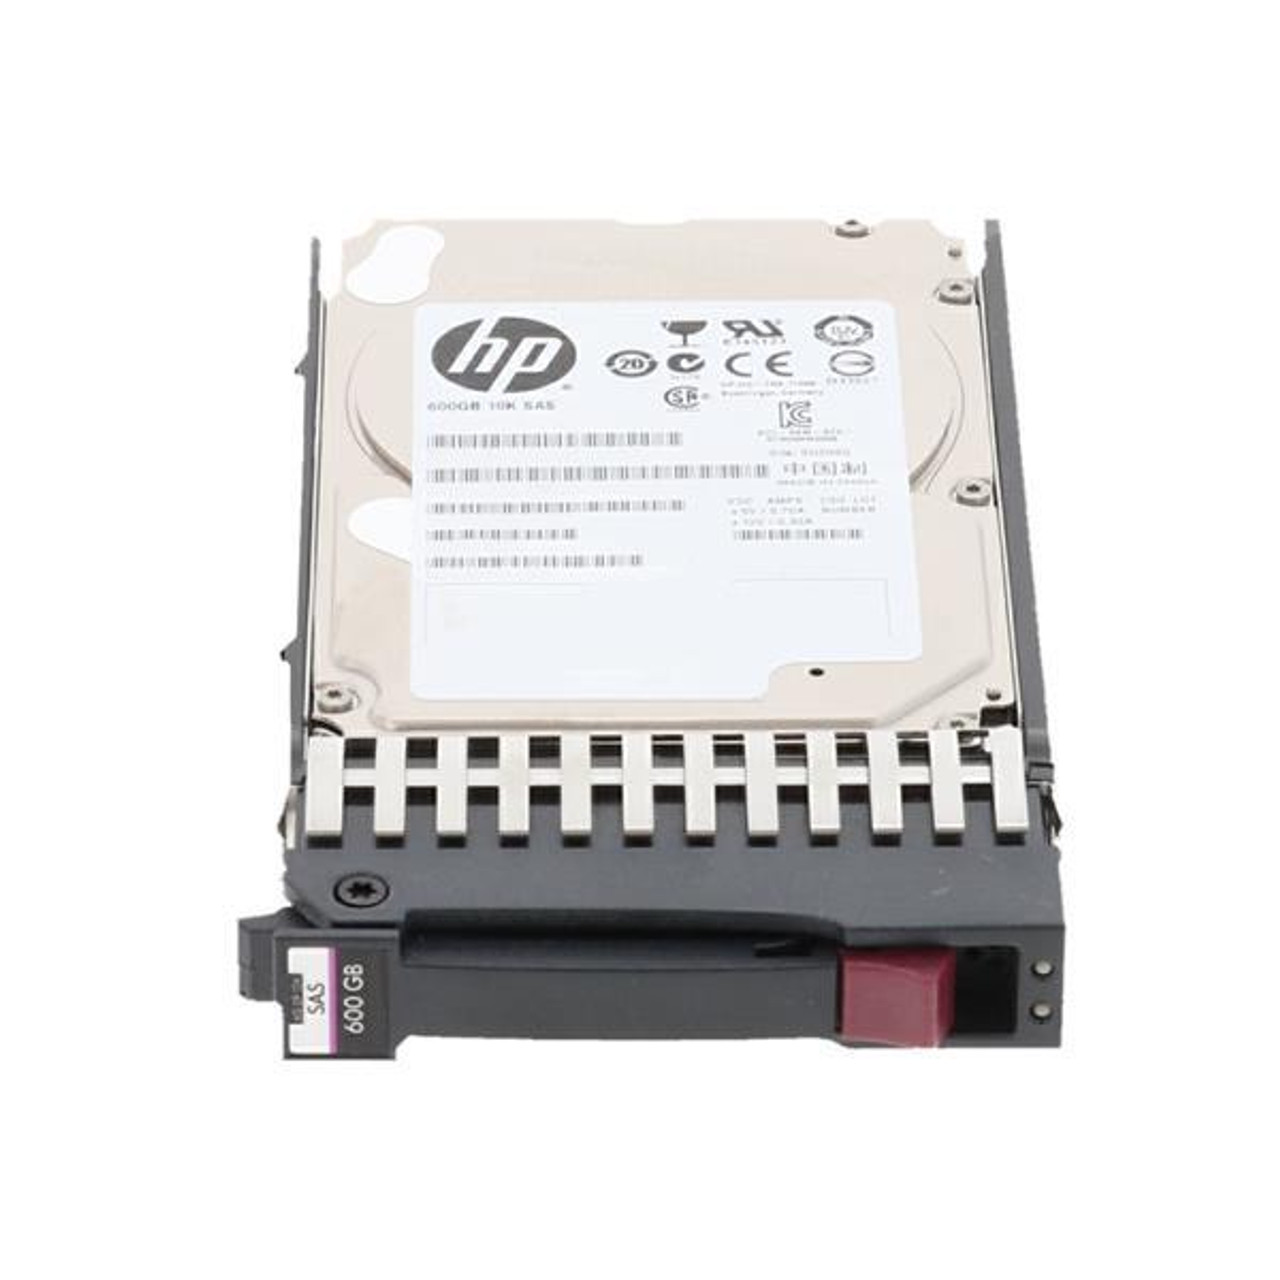 J9F42AR#0D1 HPE MSA 600GB 15000RPM SAS 12Gbps 2.5-inch Internal Hard Drive